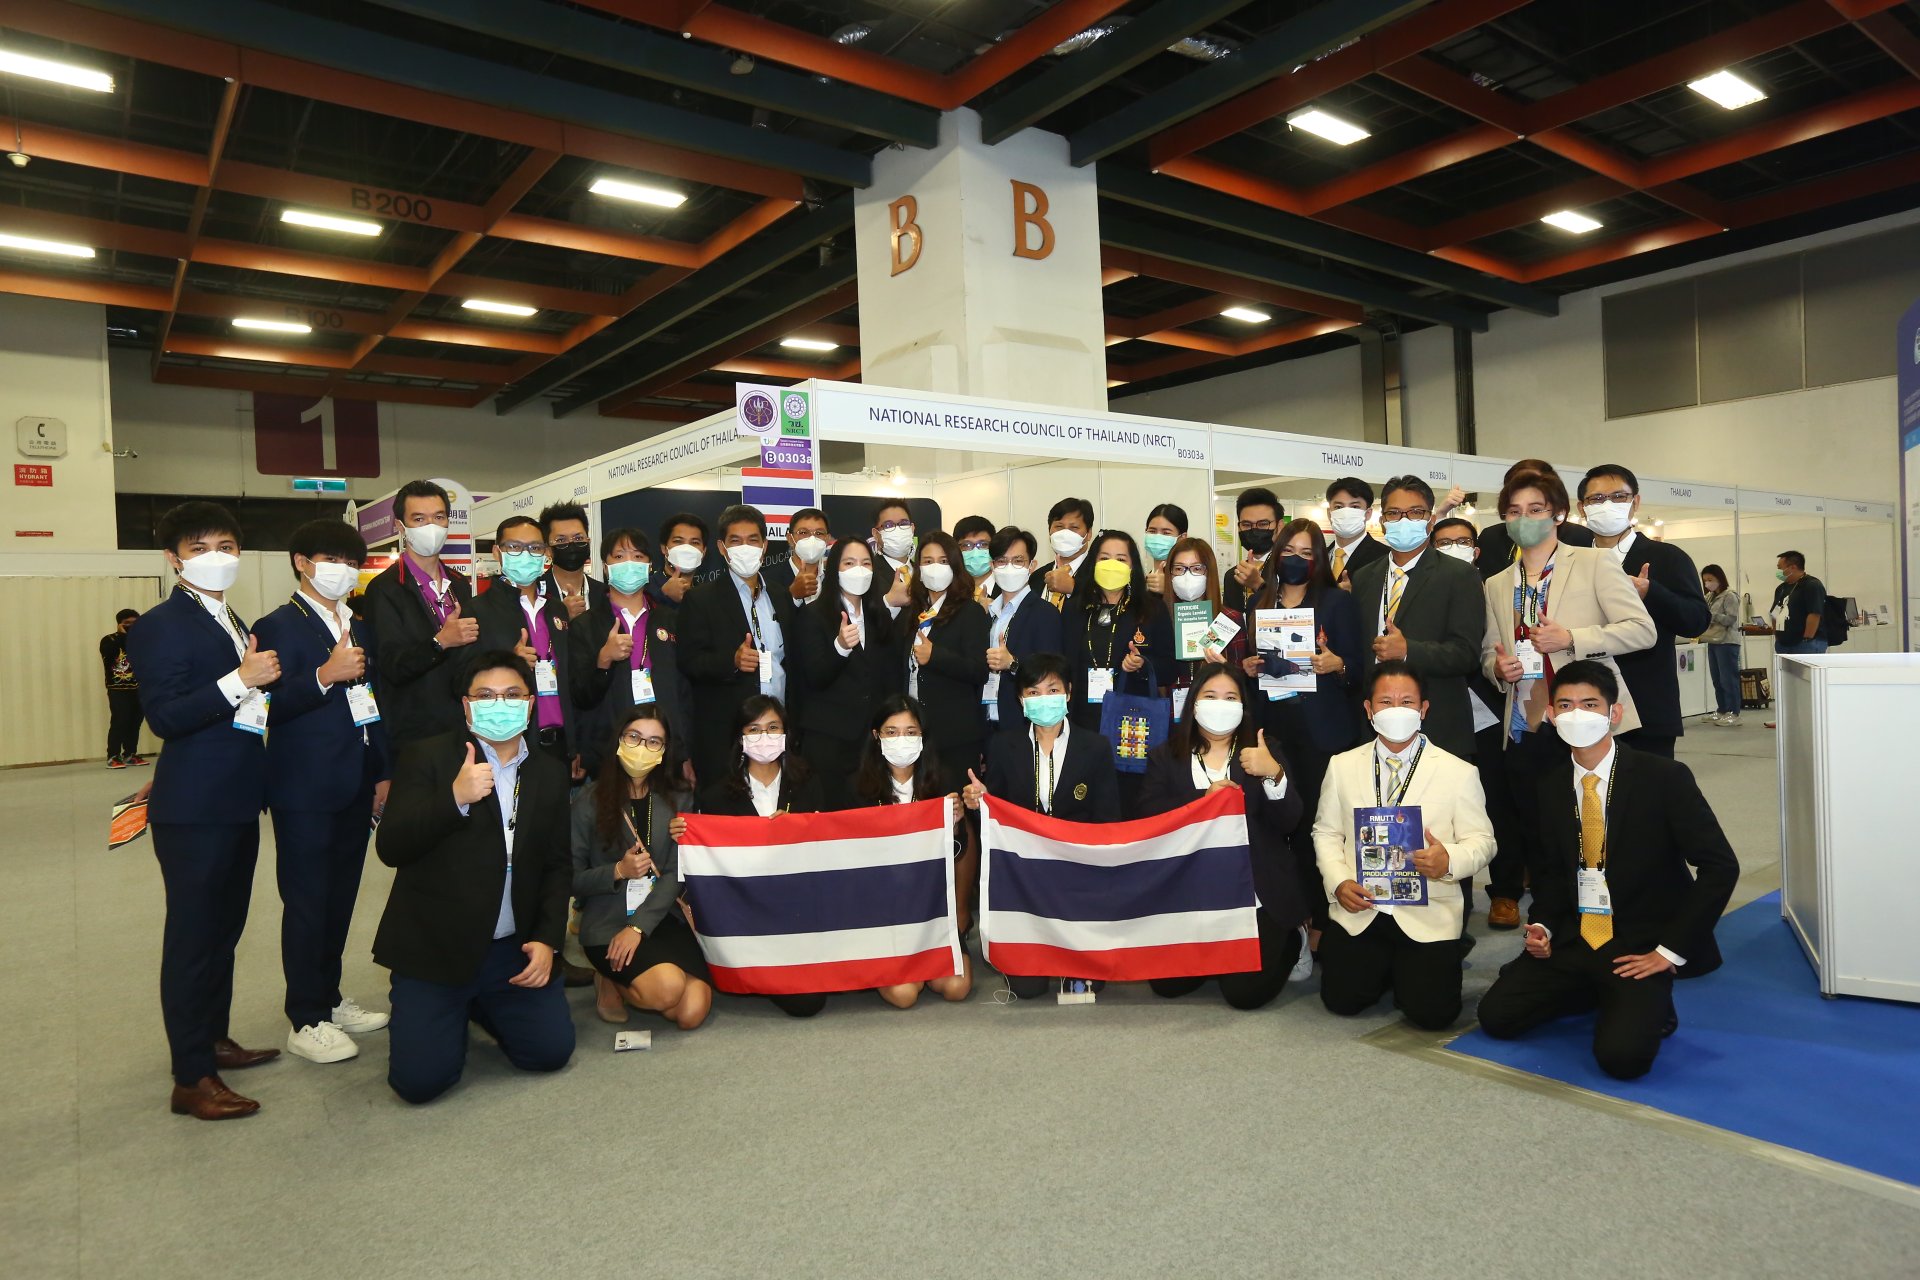 วช. นำคณะนักประดิษฐ์ นักวิจัยไทย คว้ารางวัลจากการประกวดสิ่งประดิษฐ์และนวัตกรรมระดับนานาชาติ จากเวที “Taiwan Innotech Expo 2022” (TIE 2022) ระหว่างวันที่ 13 - 15 ตุลาคม 2565 ณ เมืองไทเป ไต้หวัน